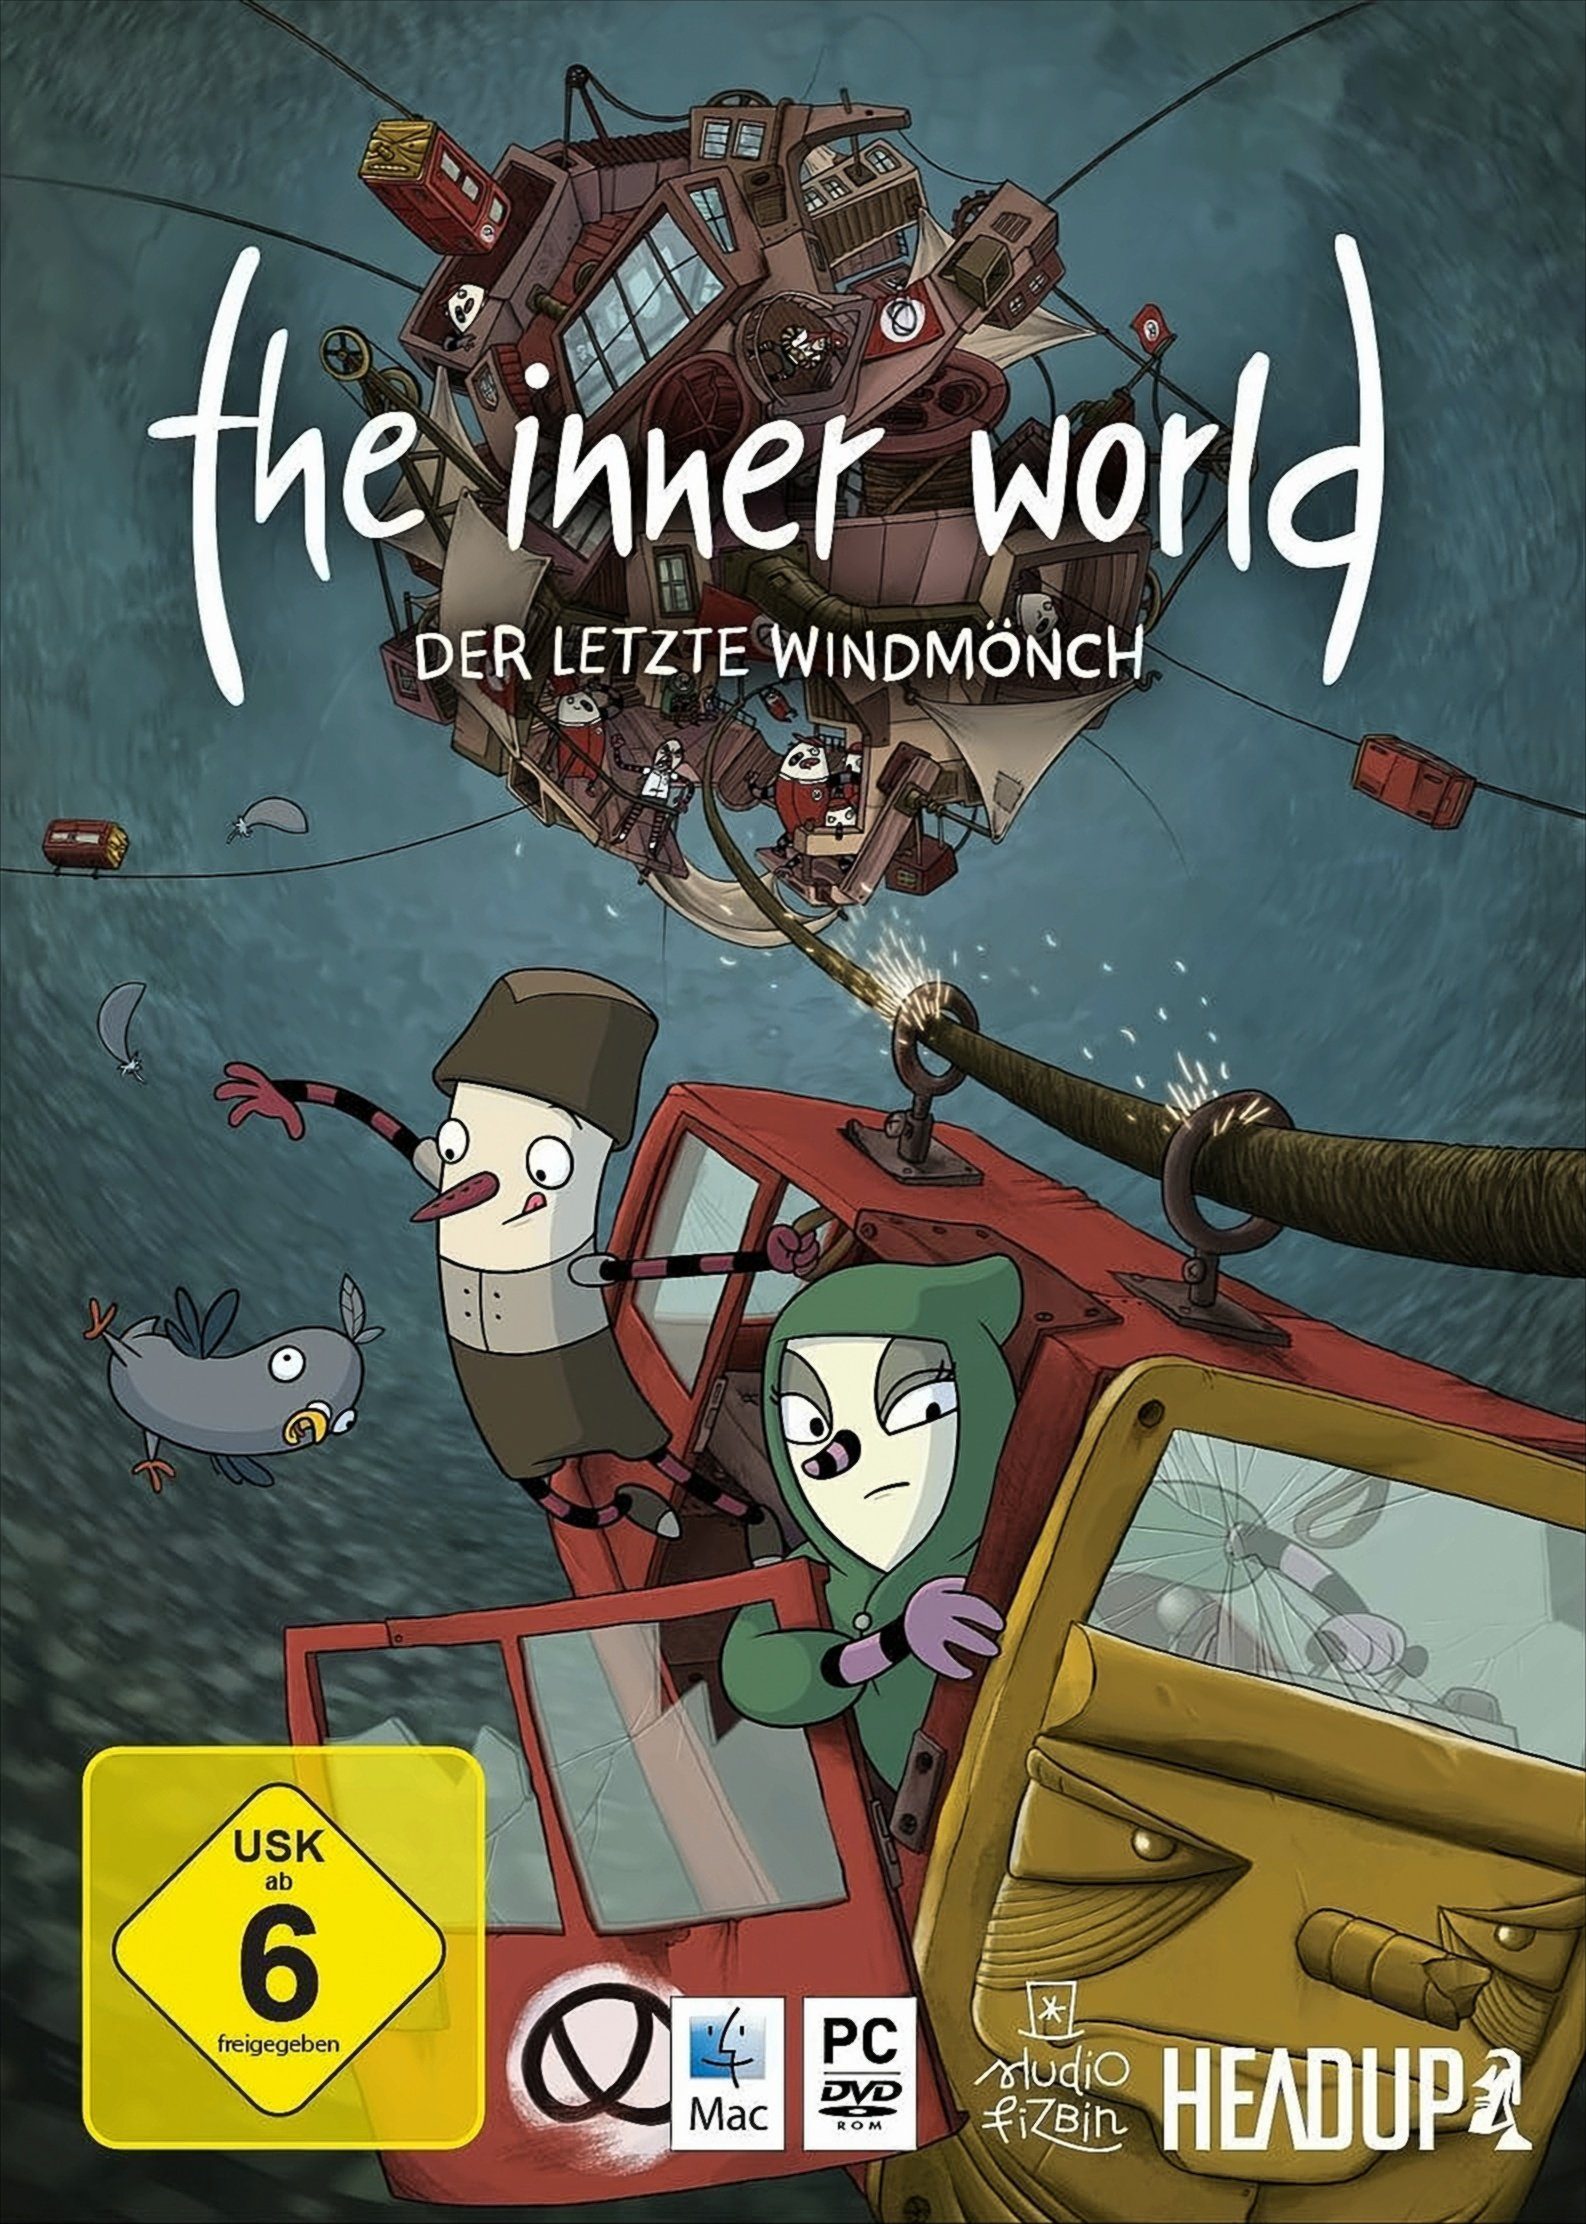 The Inner World: Der letzte Windmönch PC